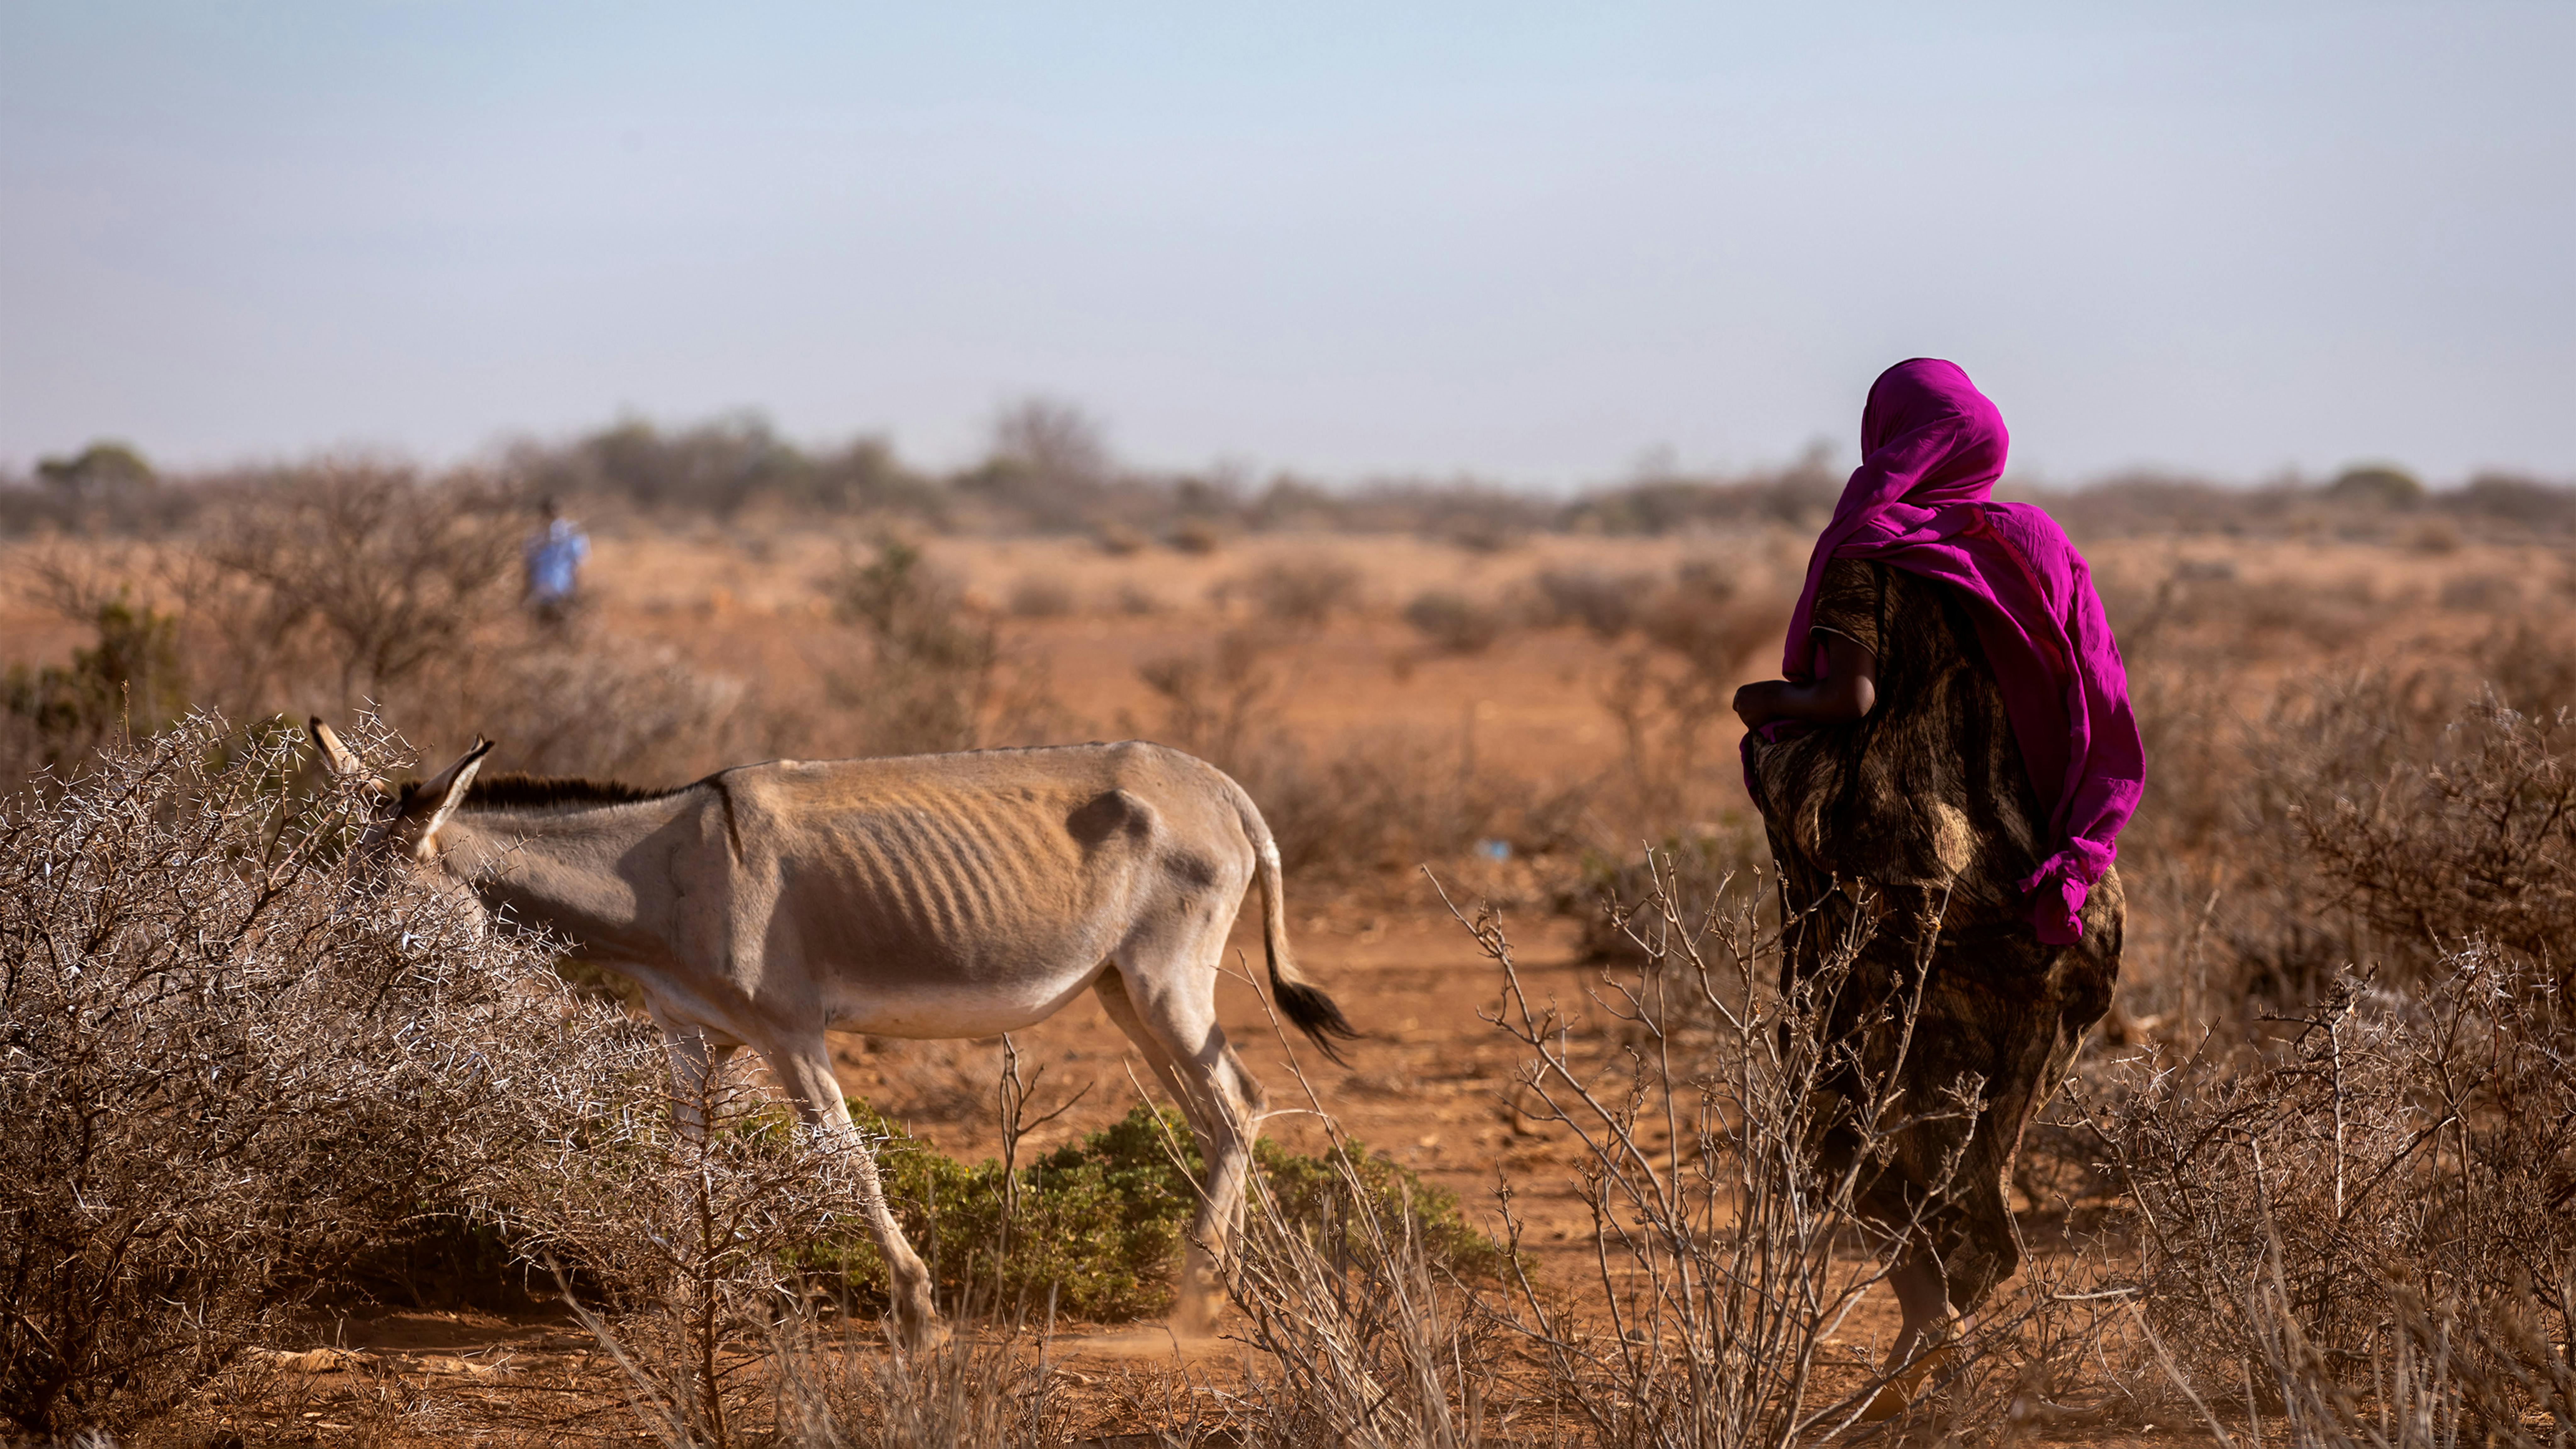 Una donna cammina con il suo asino affamato. Il cambiamento climatico provoca il caos sui mezzi di sussistenza delle comunità nella regione somala.